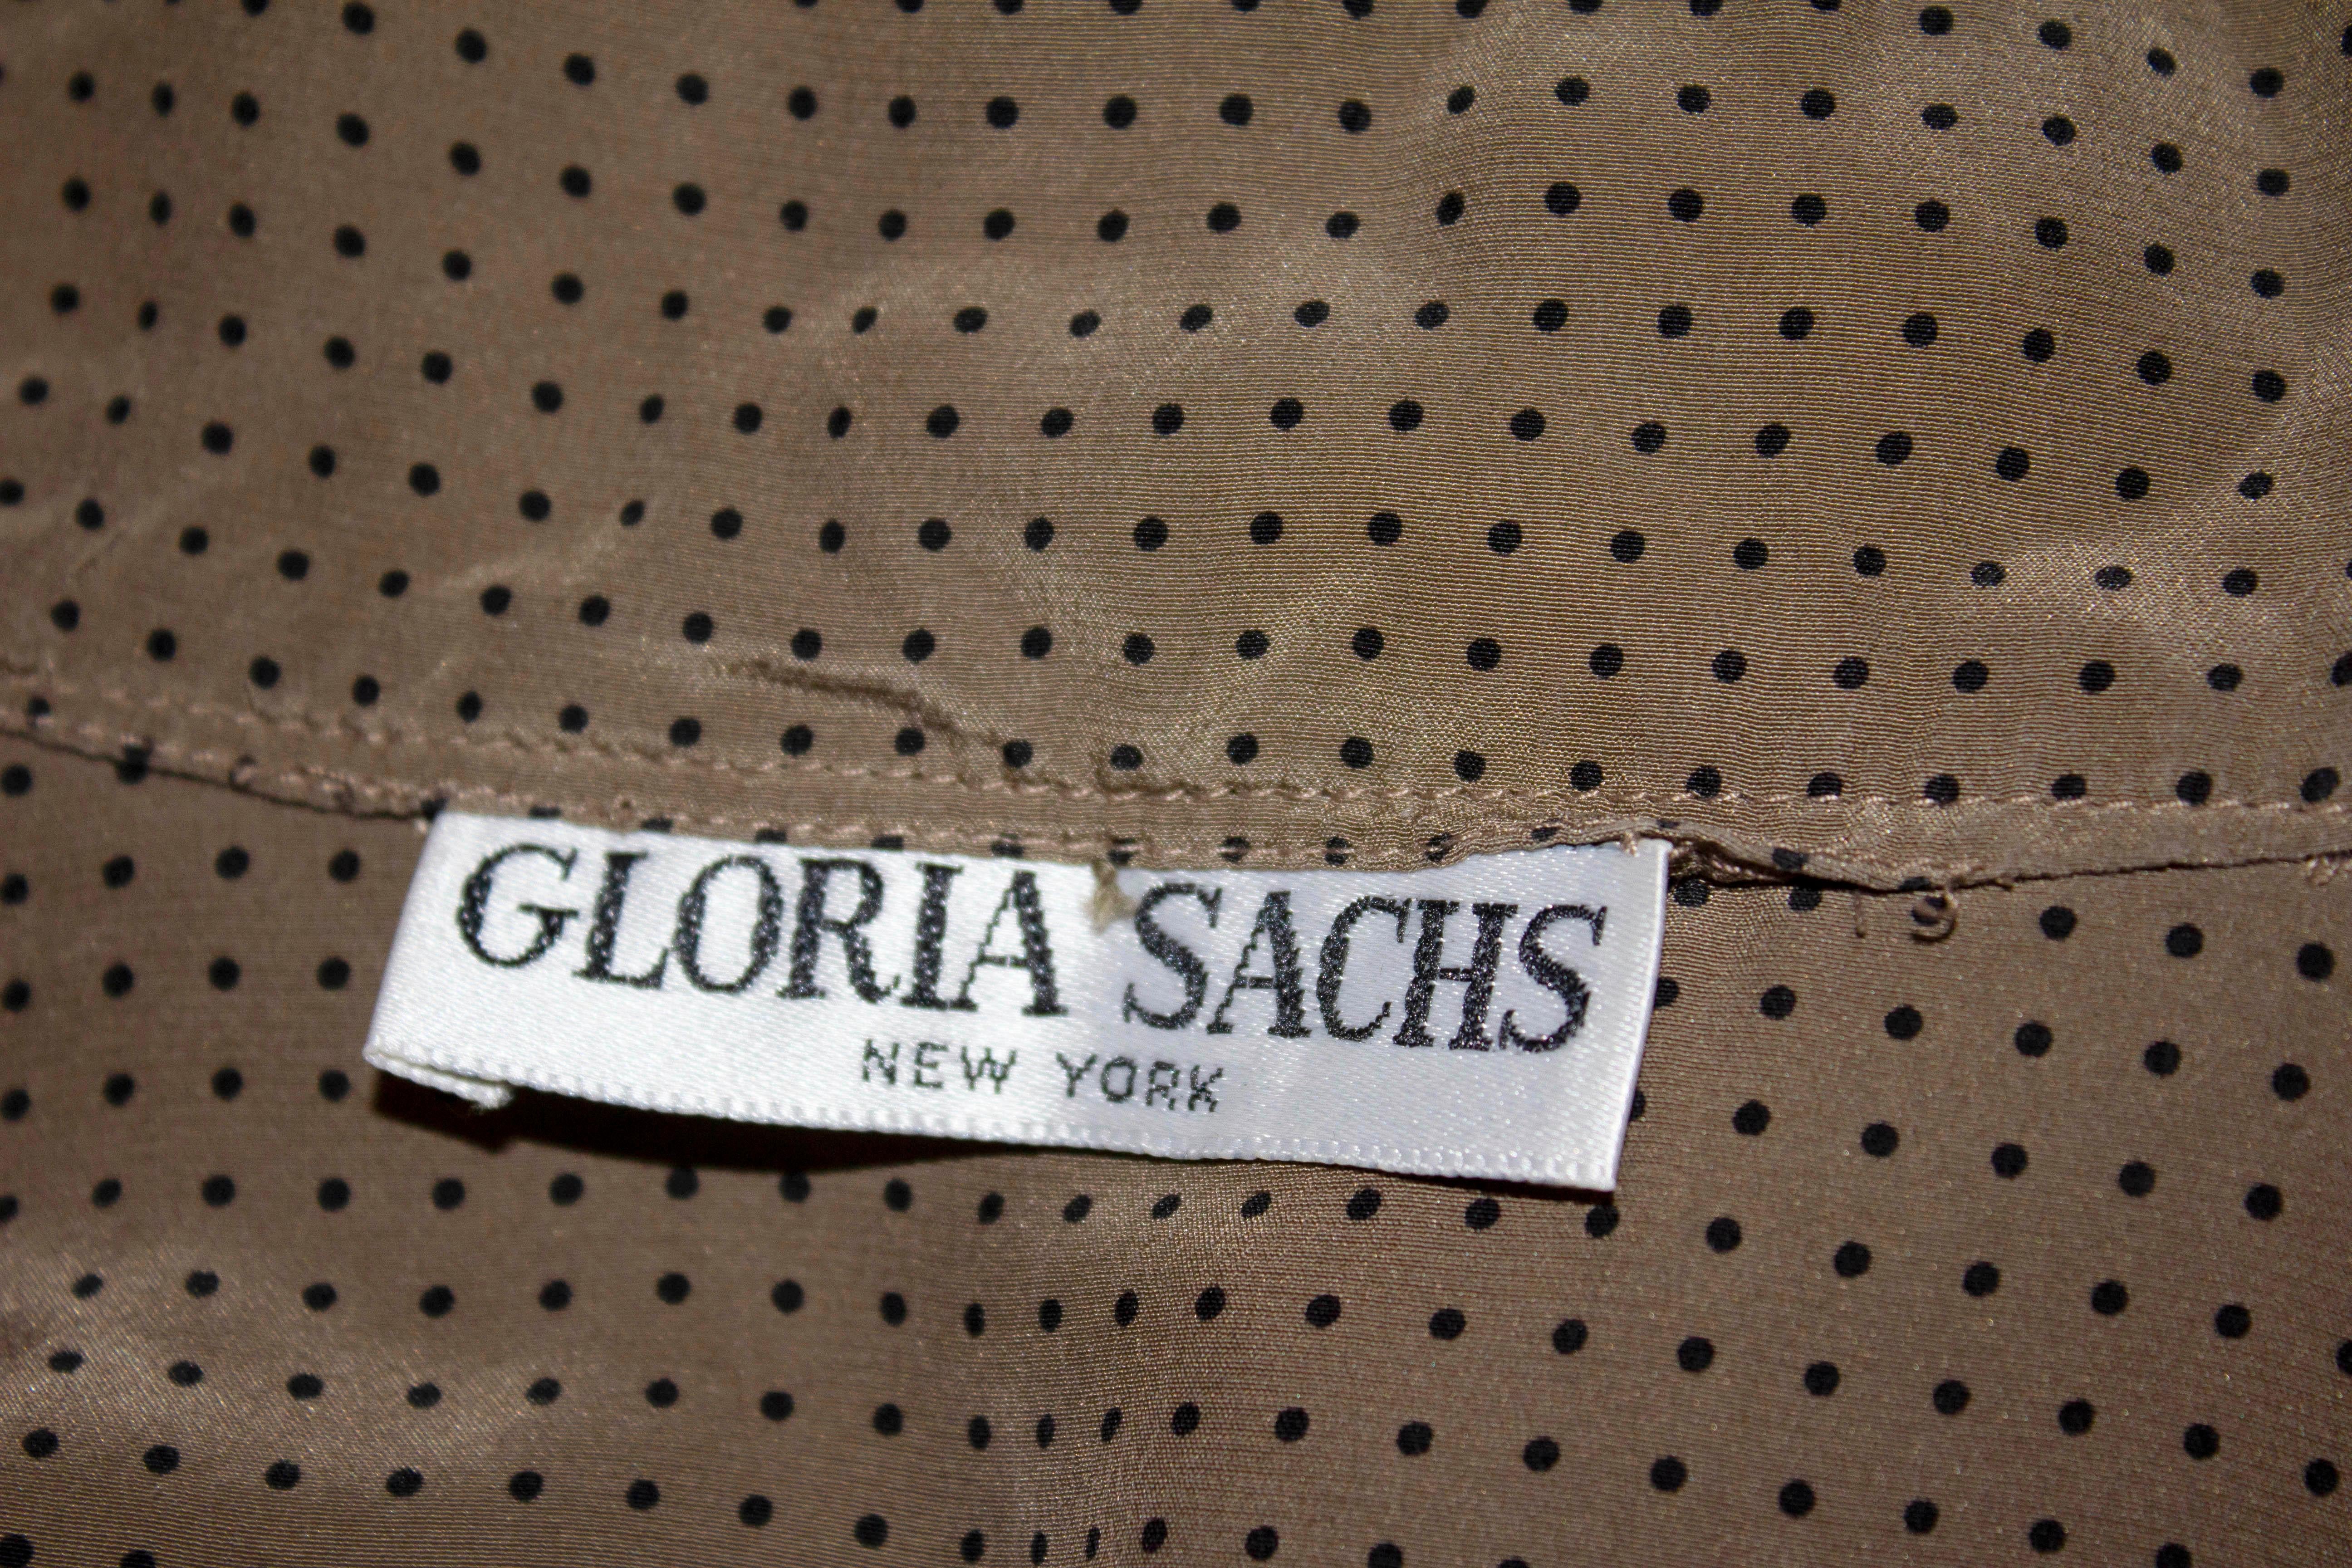 Un chemisier en soie vintage super doux de Gloria Sachs, New York. Le chemisier est de couleur café avec des points noirs, un seul bouton au poignet, une ouverture sur le devant et une cravate attachée au genou.
Mesures : Poitrine 36'', longueur 25''